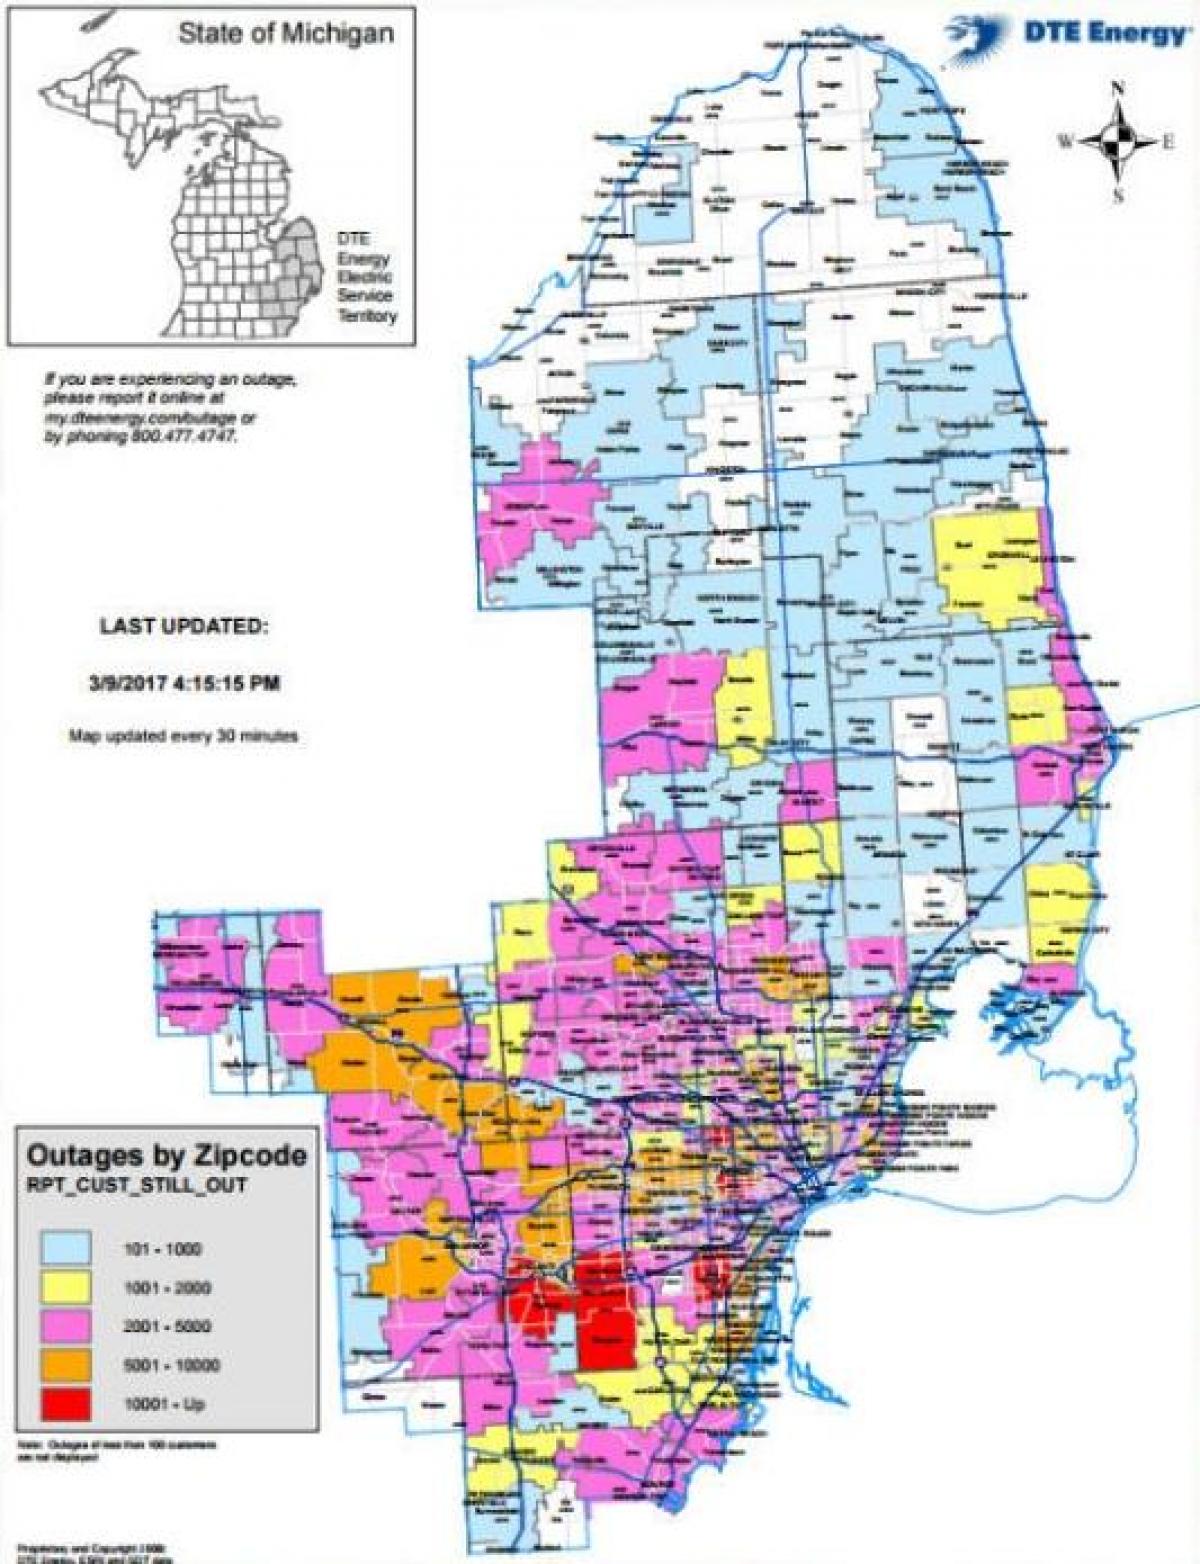 Detroit edison strømafbrydelse kort